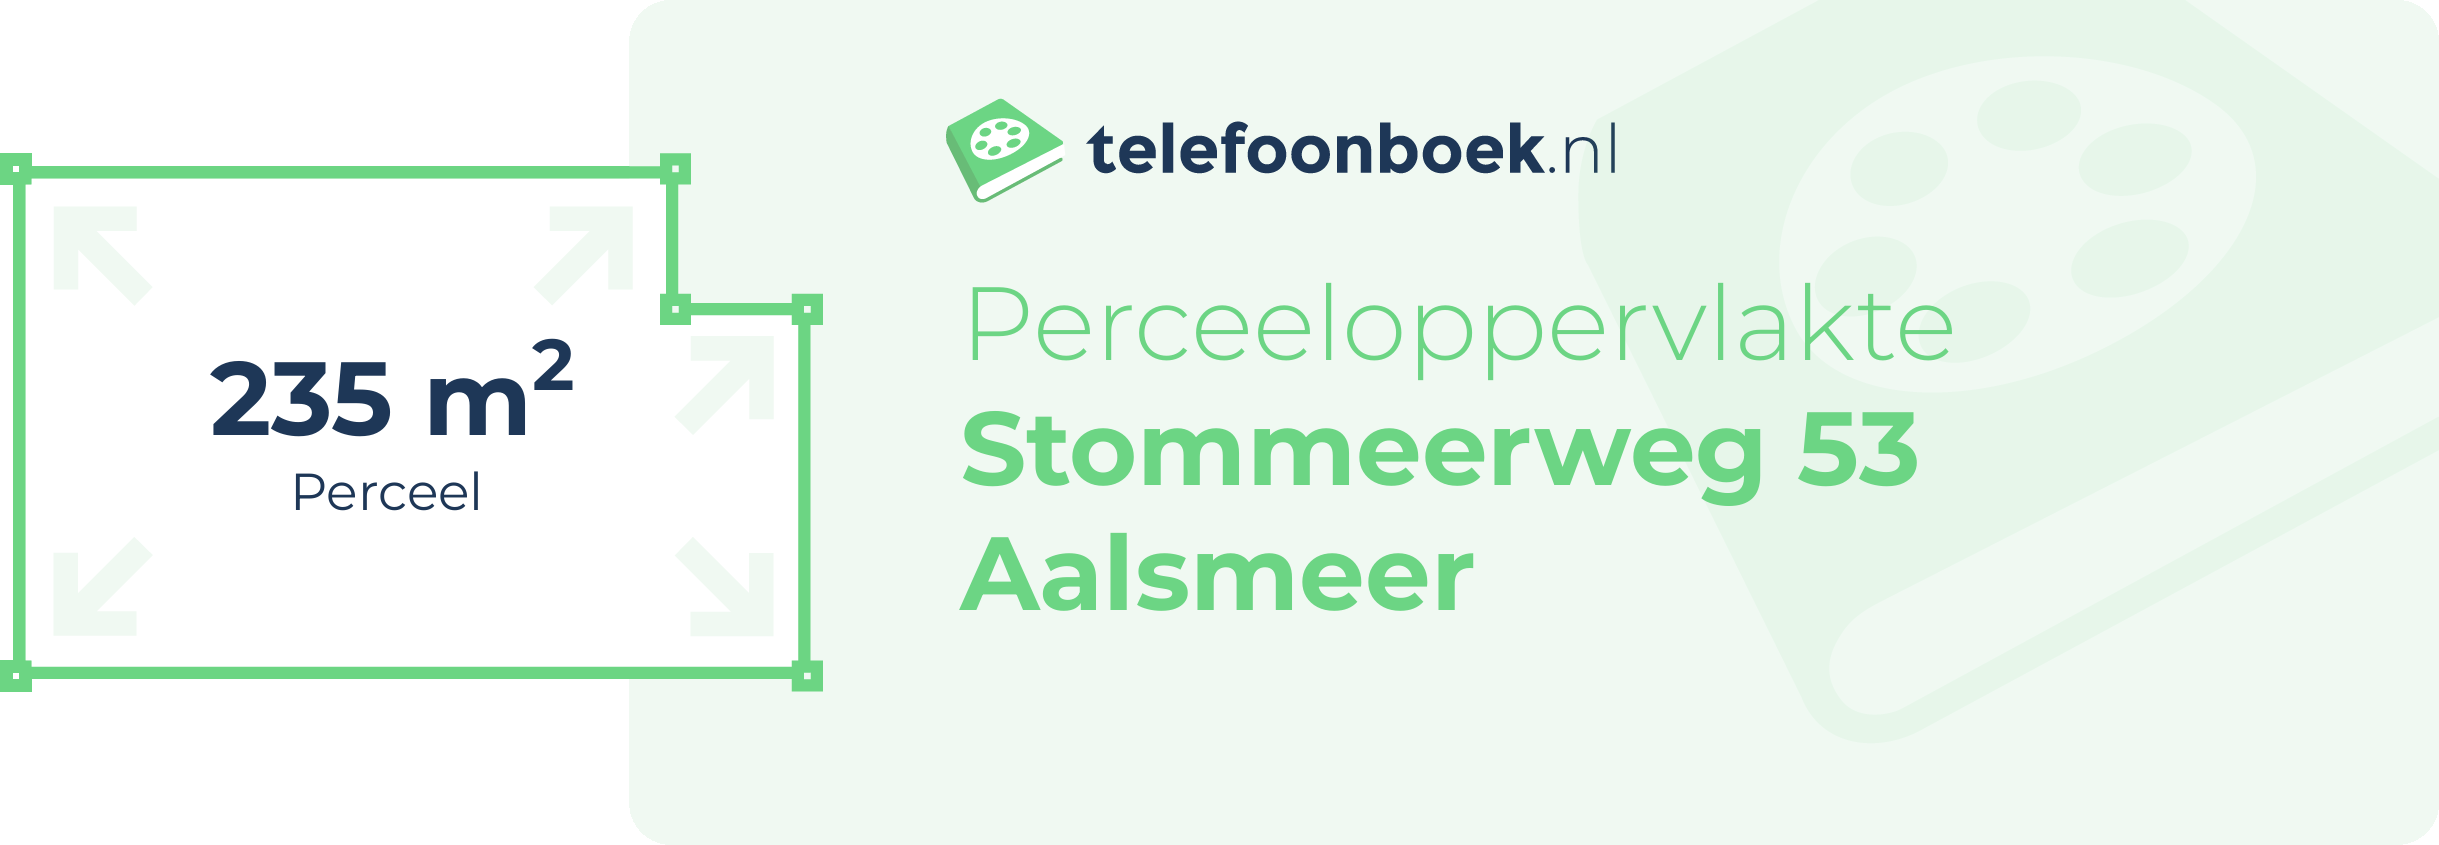 Perceeloppervlakte Stommeerweg 53 Aalsmeer